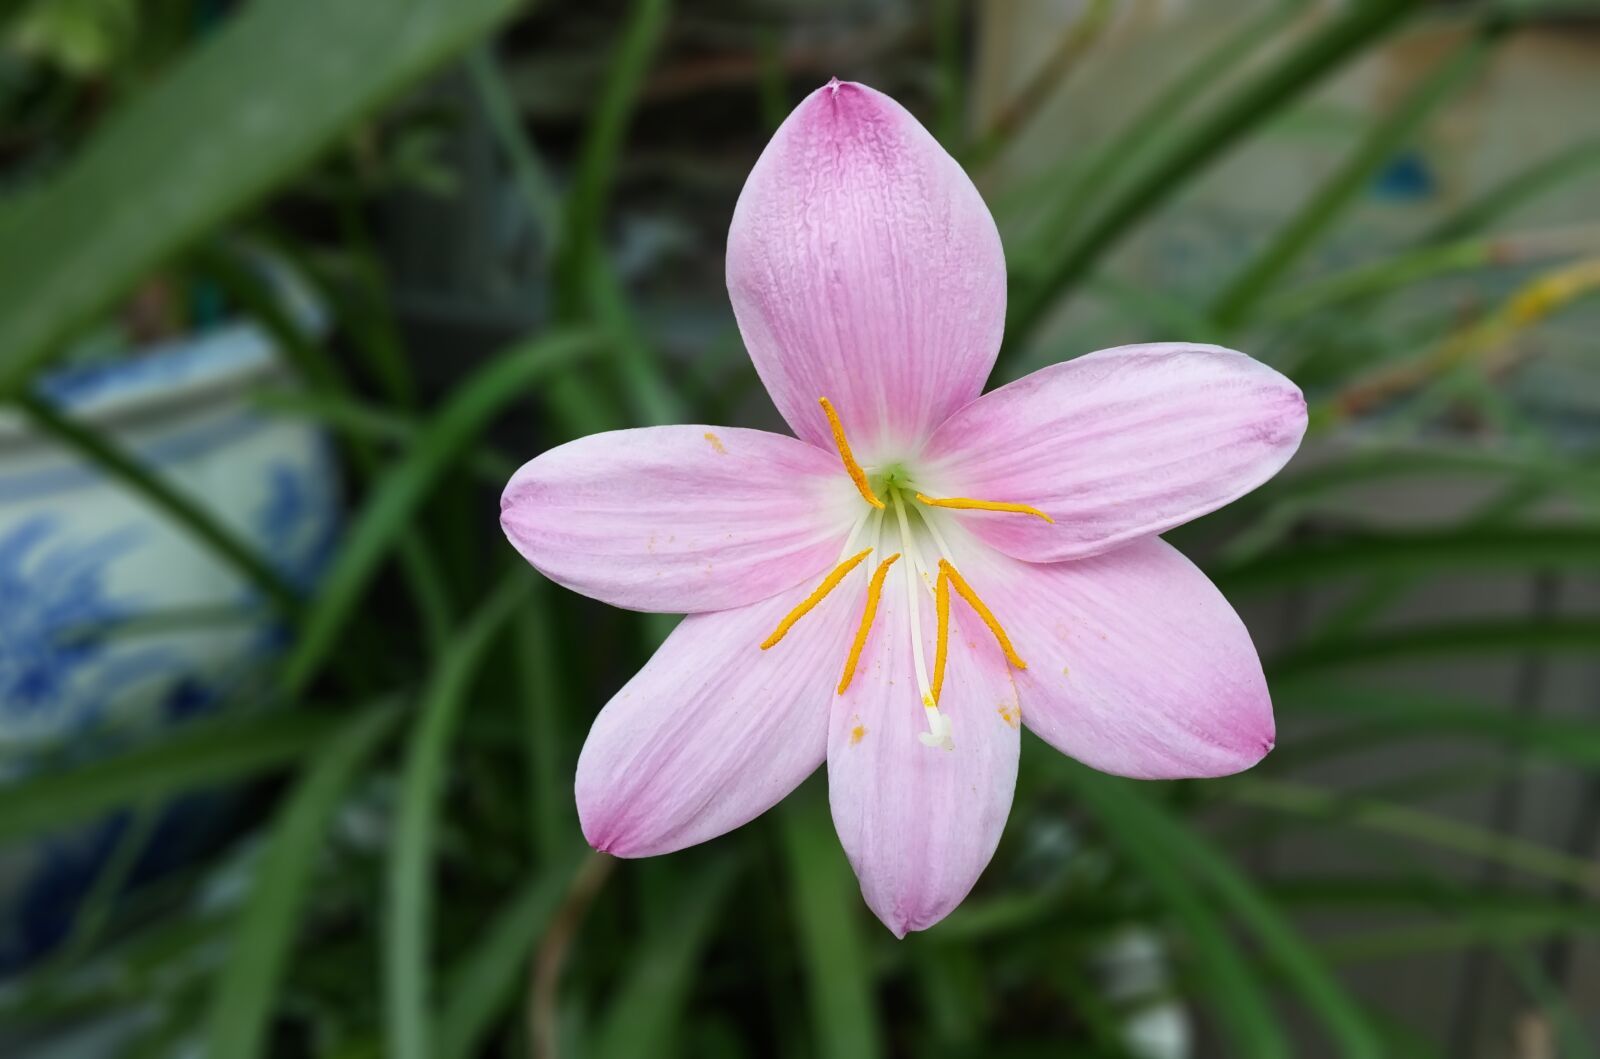 LG G Pro2 sample photo. Saffron, crocus, saffron flower photography